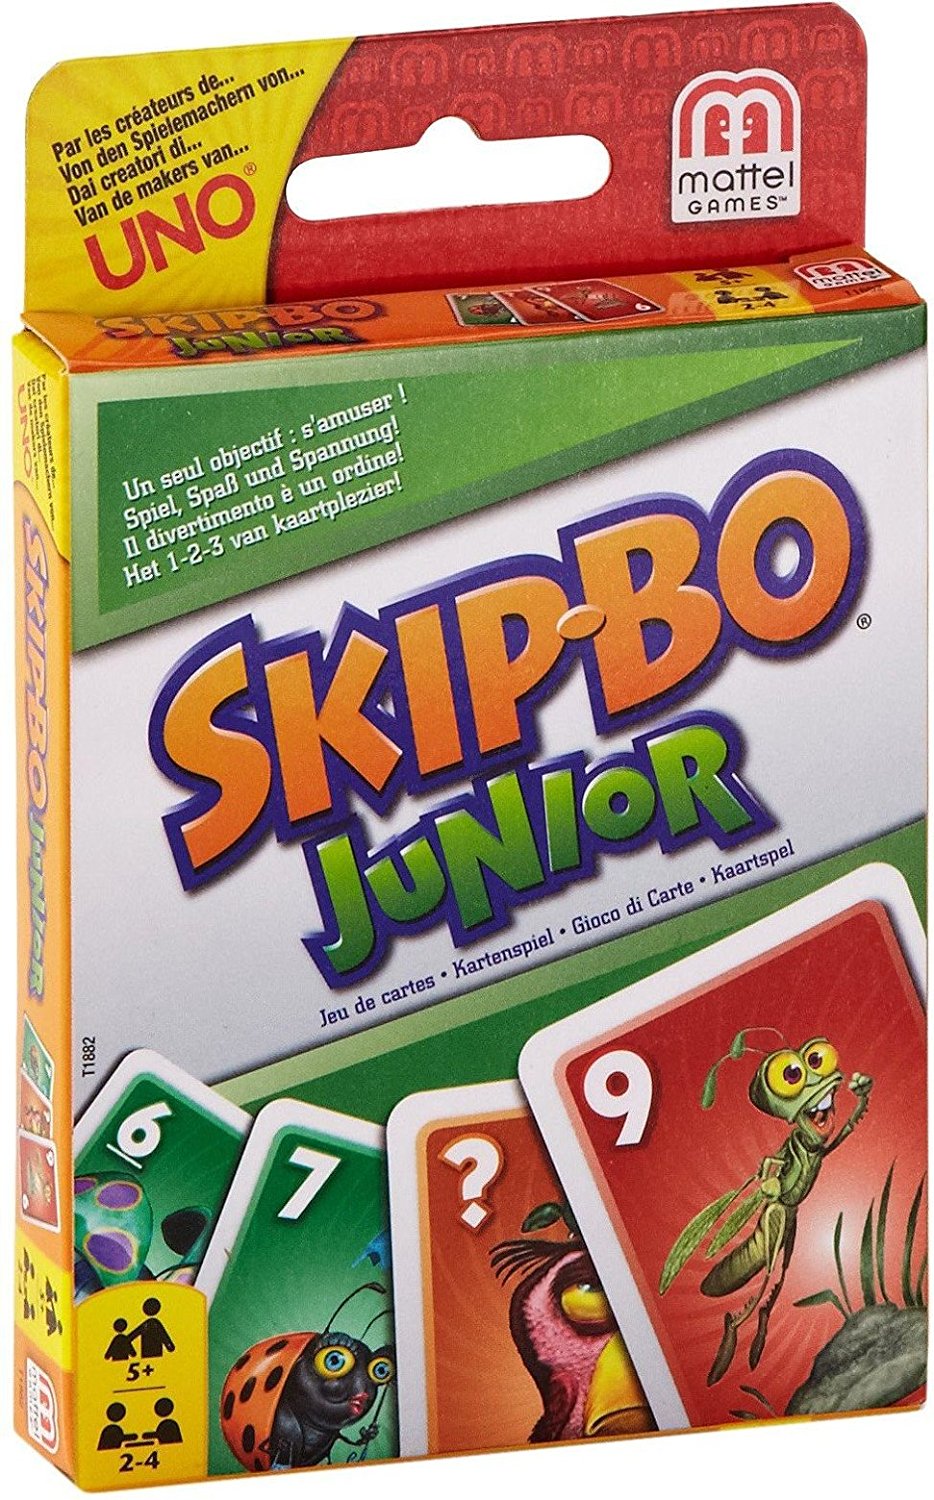 Skip-Bo Junior Card Game – Just $4.46!